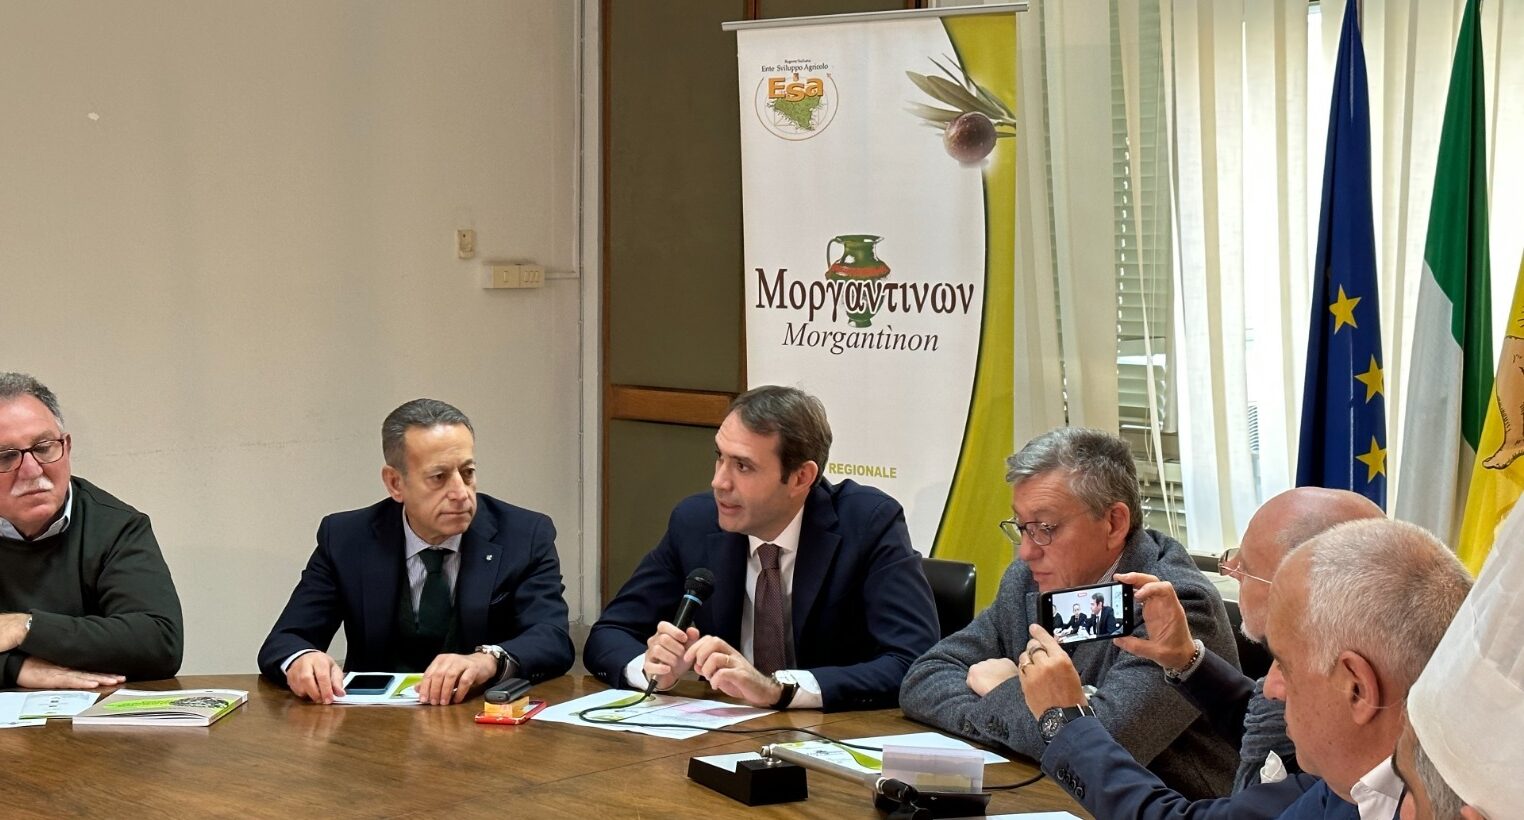 Concorso Morgantinon, un premio alle eccellenze siciliane dell’extravergine di oliva